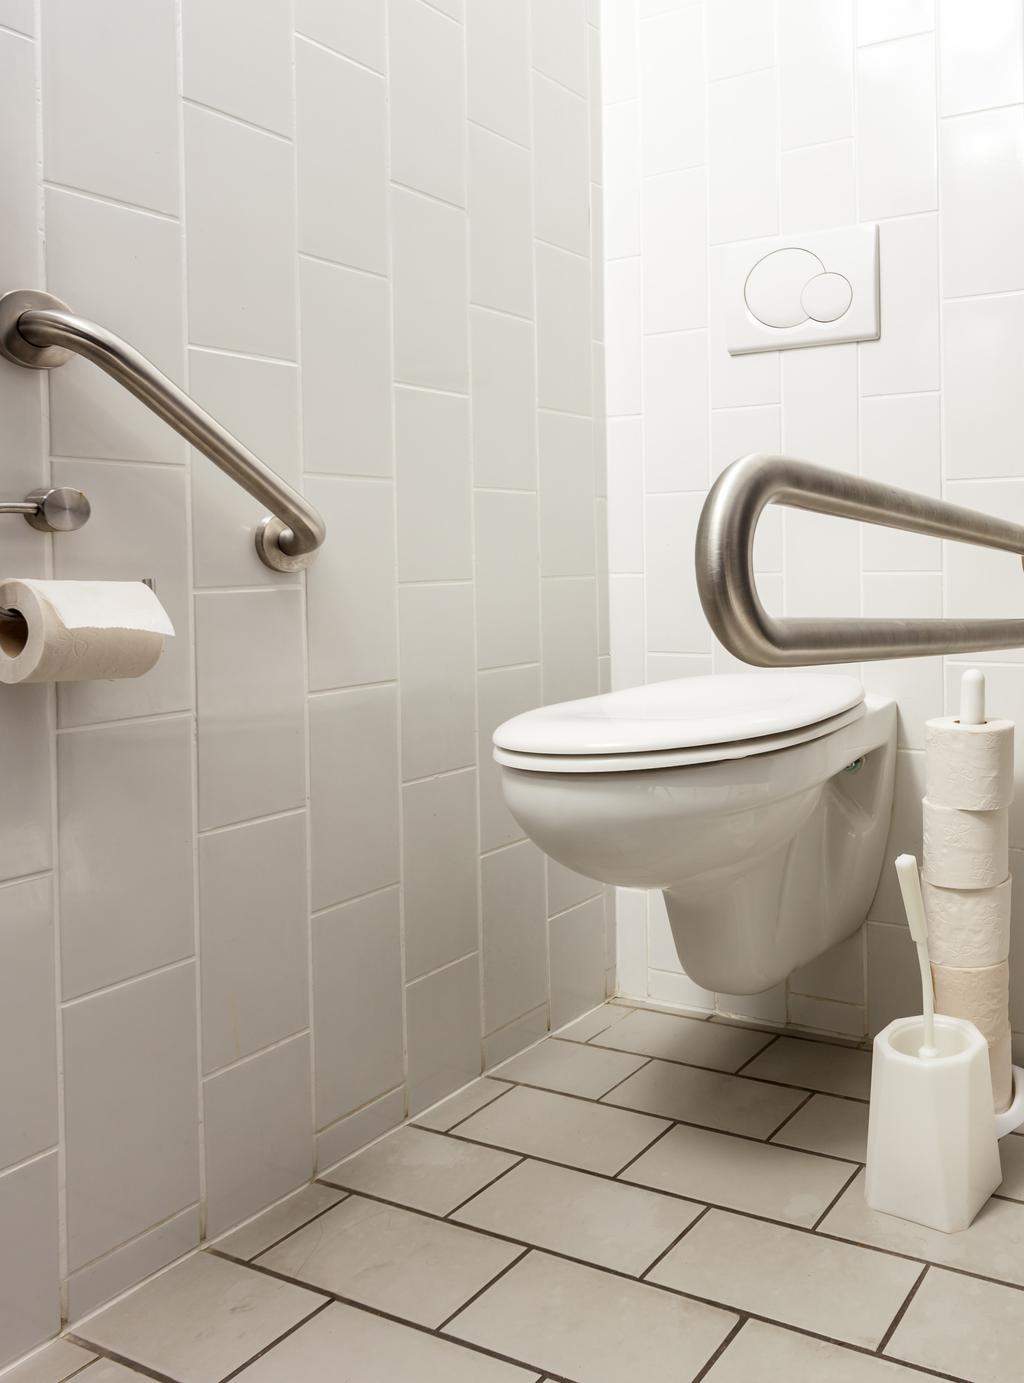 Como Prevenir No banheiro Utilize tapetes antiderrapantes ao lado da banheira ou do box para sua segurança Instale barras de apoio nas paredes Aumente a